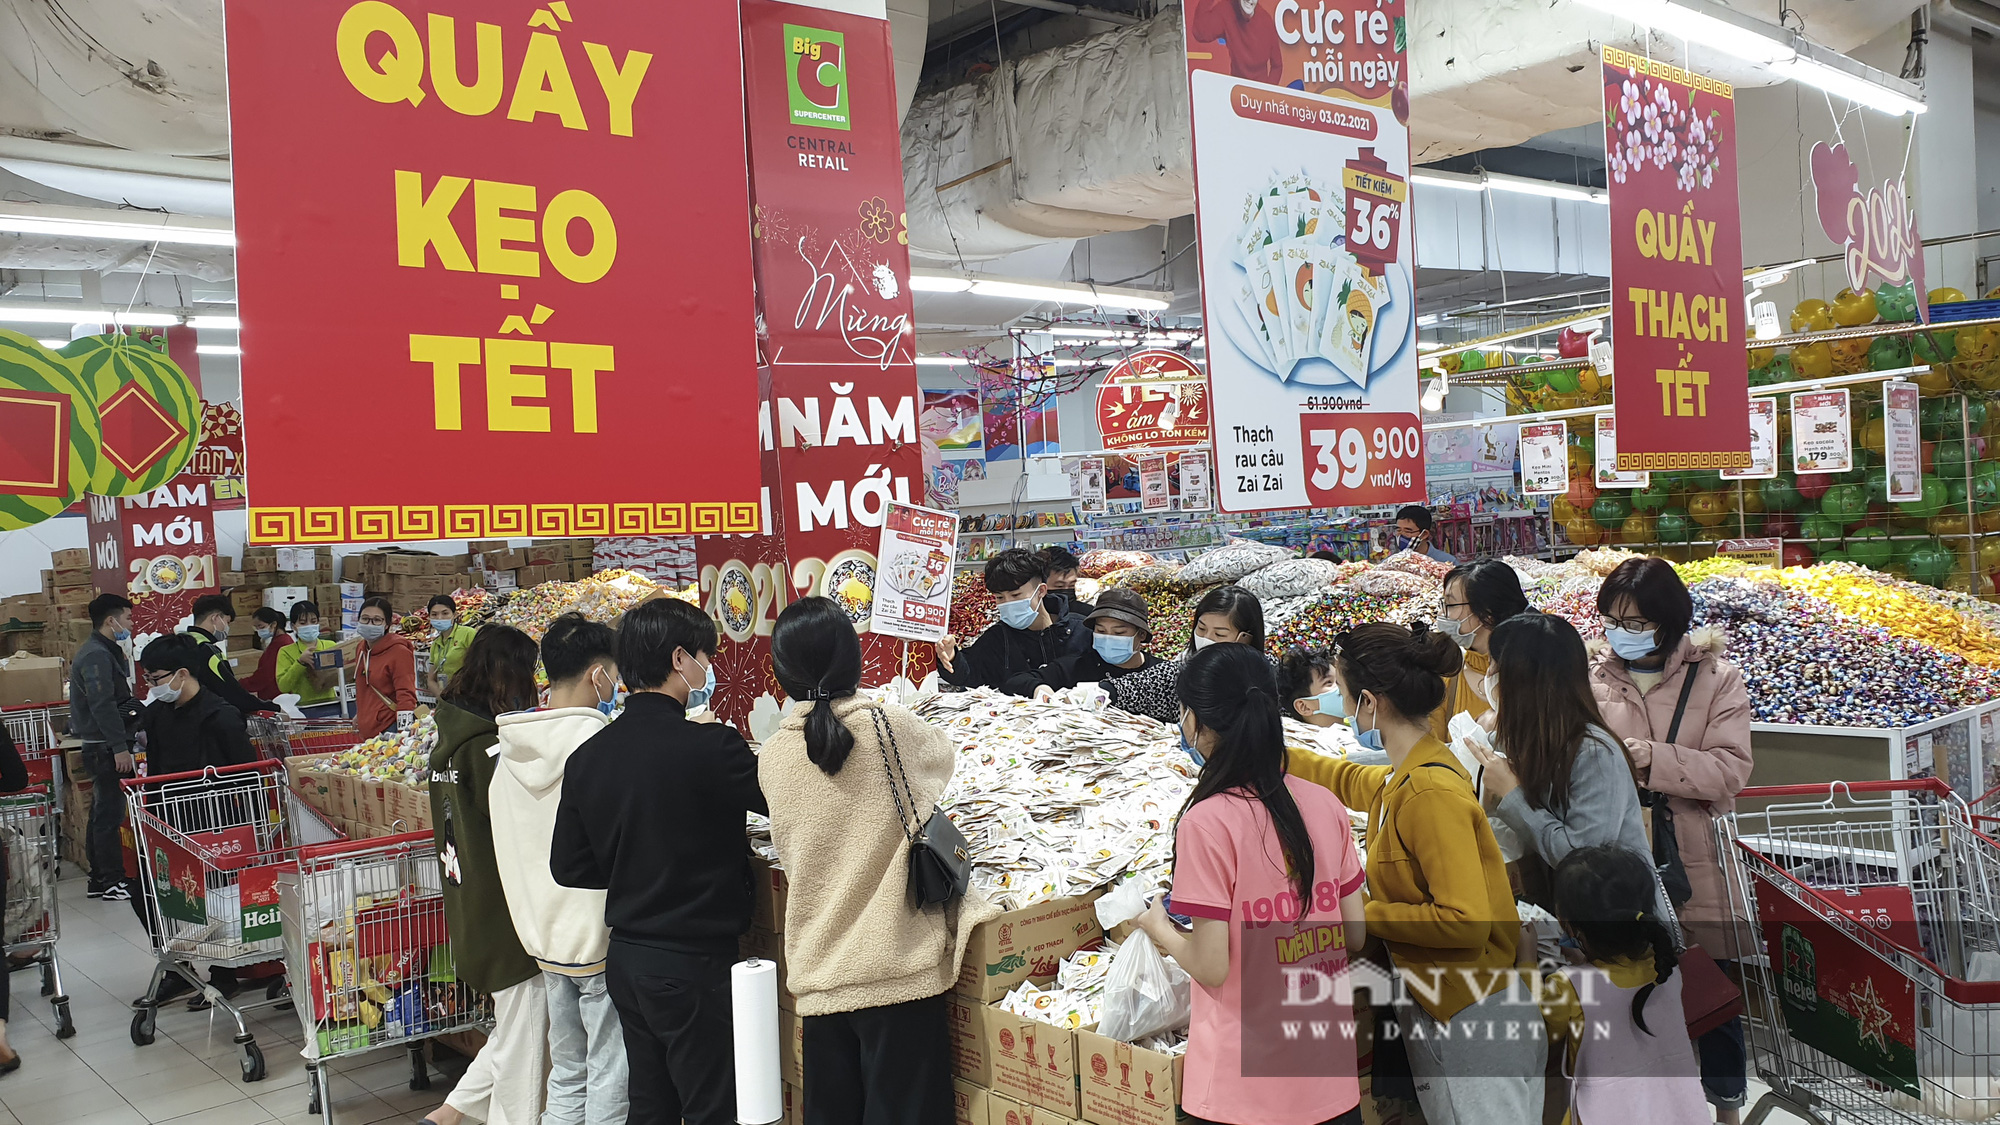 Bất chấp dịch Covid-19, siêu thị vẫn đông nghịt người mua sắm Tết  - Ảnh 7.